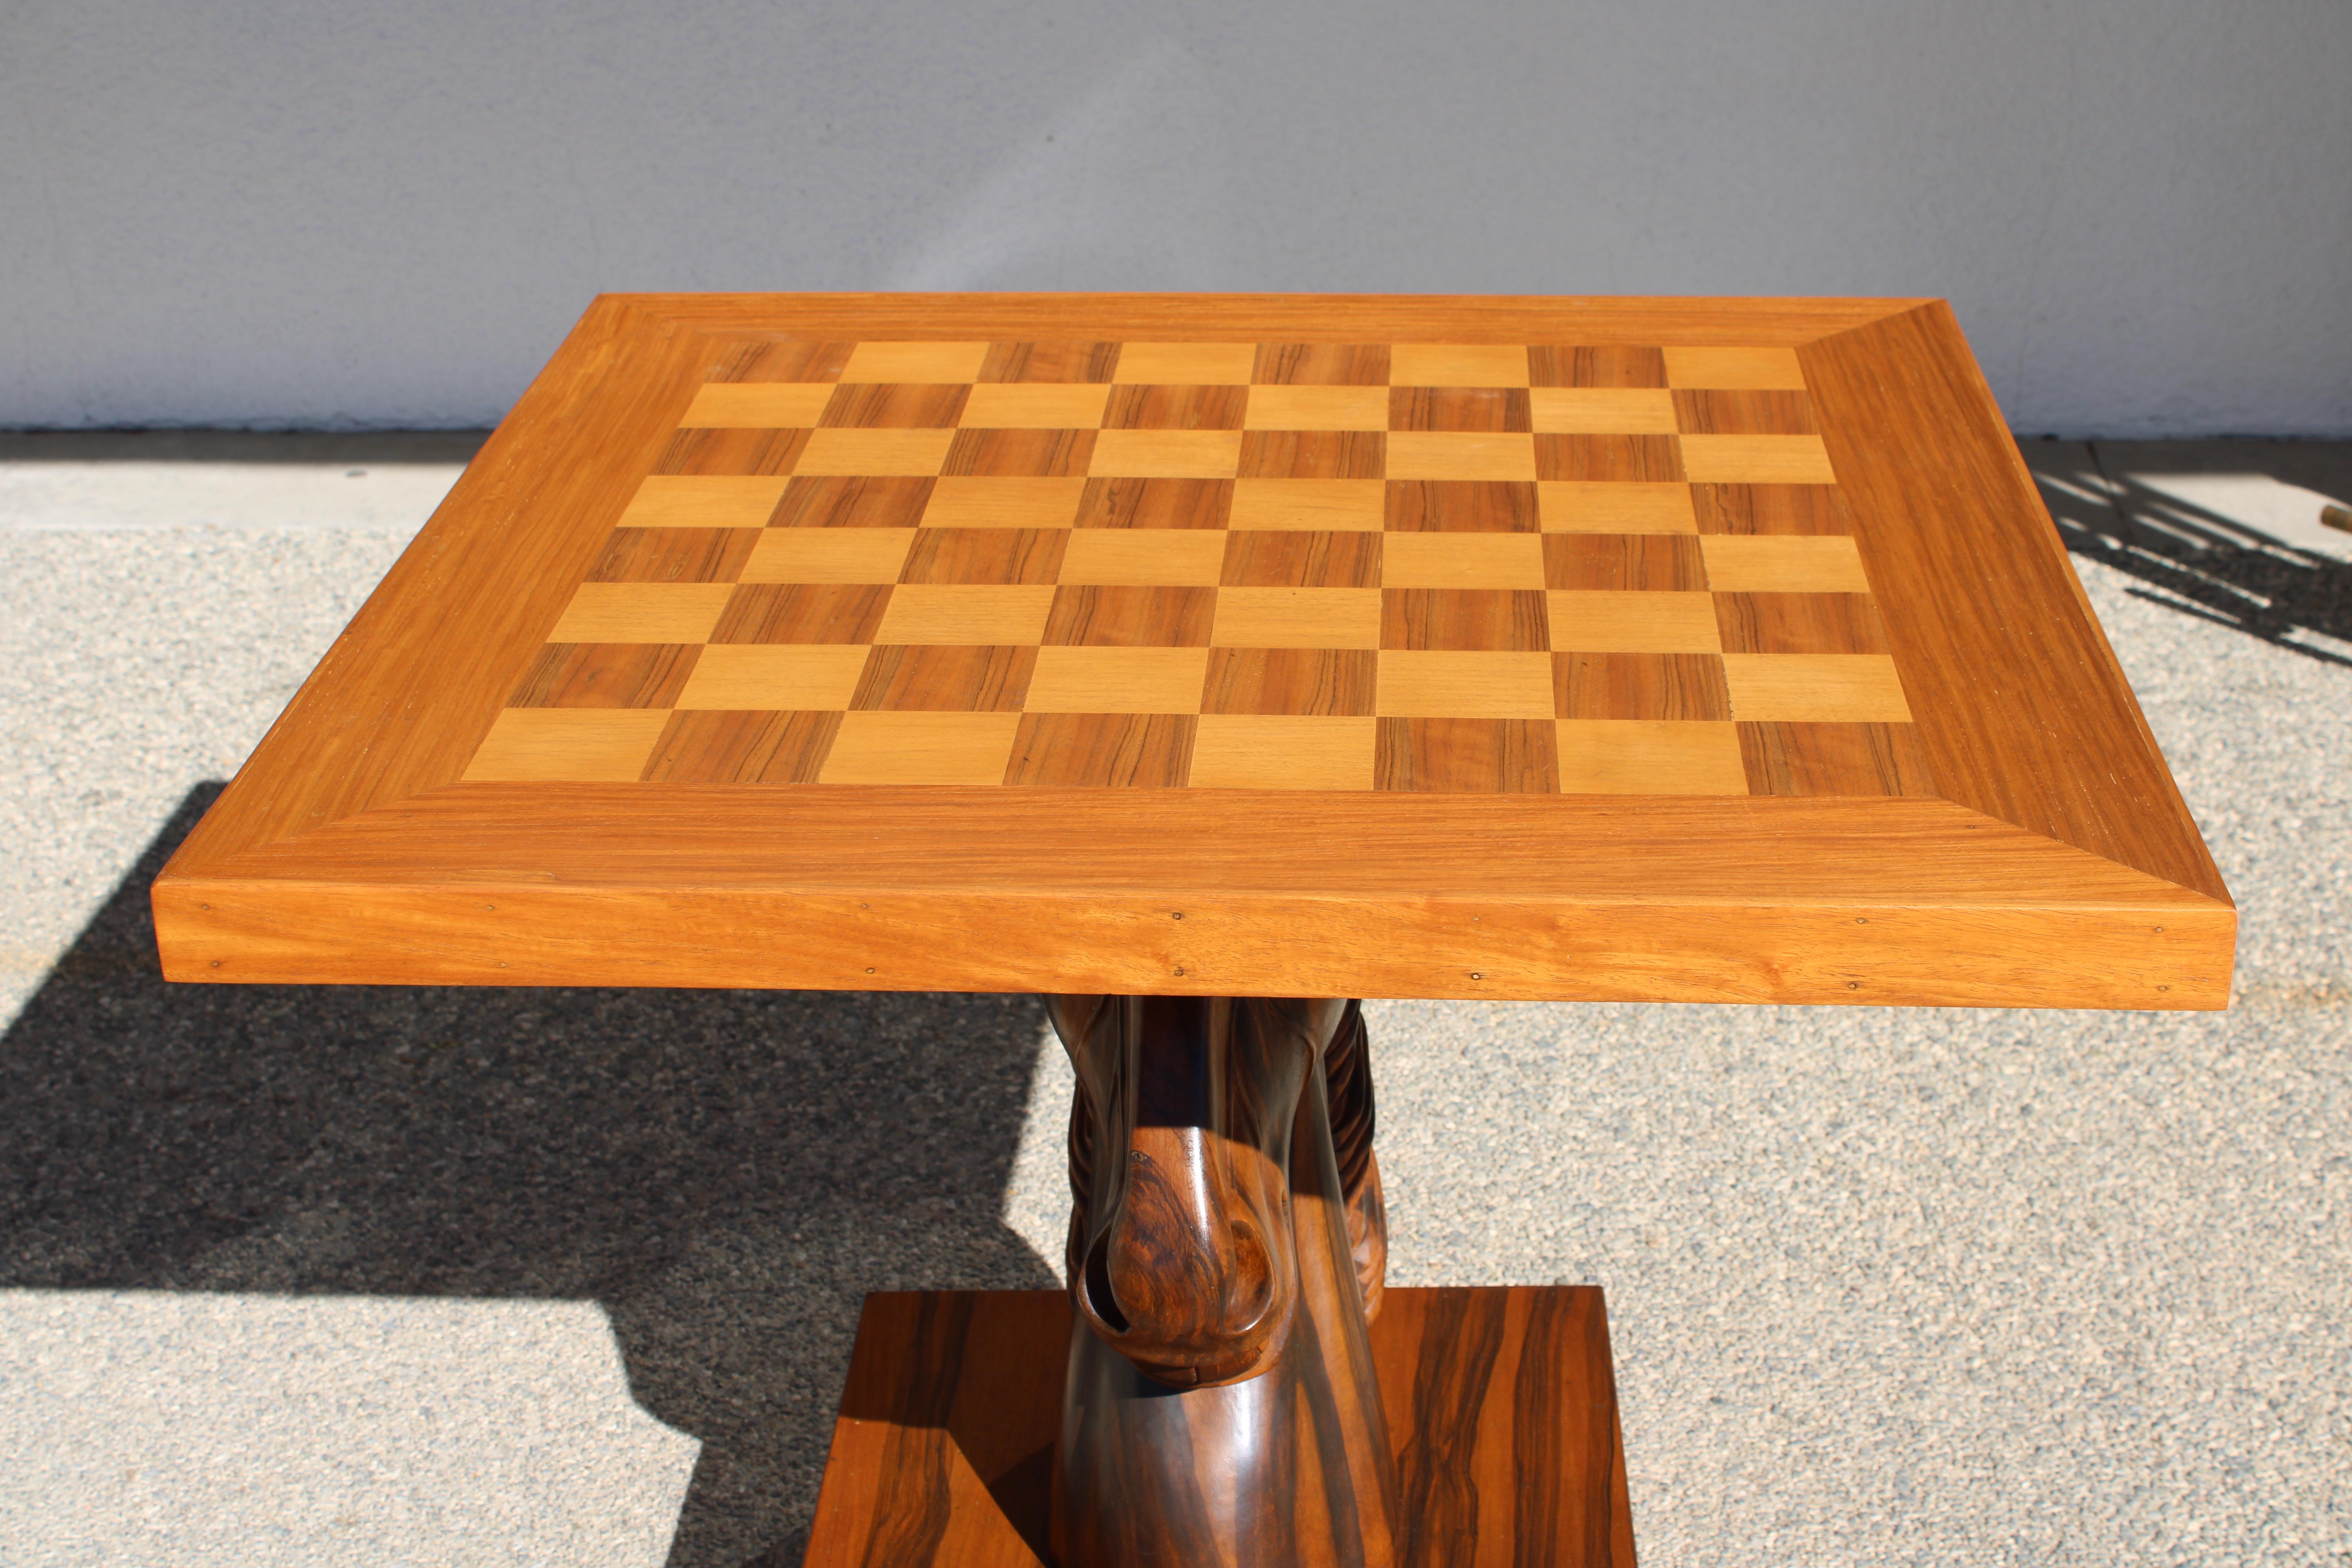 Kompletter Schachtisch mit Schachfiguren.  Tischfuß und Tischplatte wurden professionell aufgearbeitet.  Die Platte ist 31,75